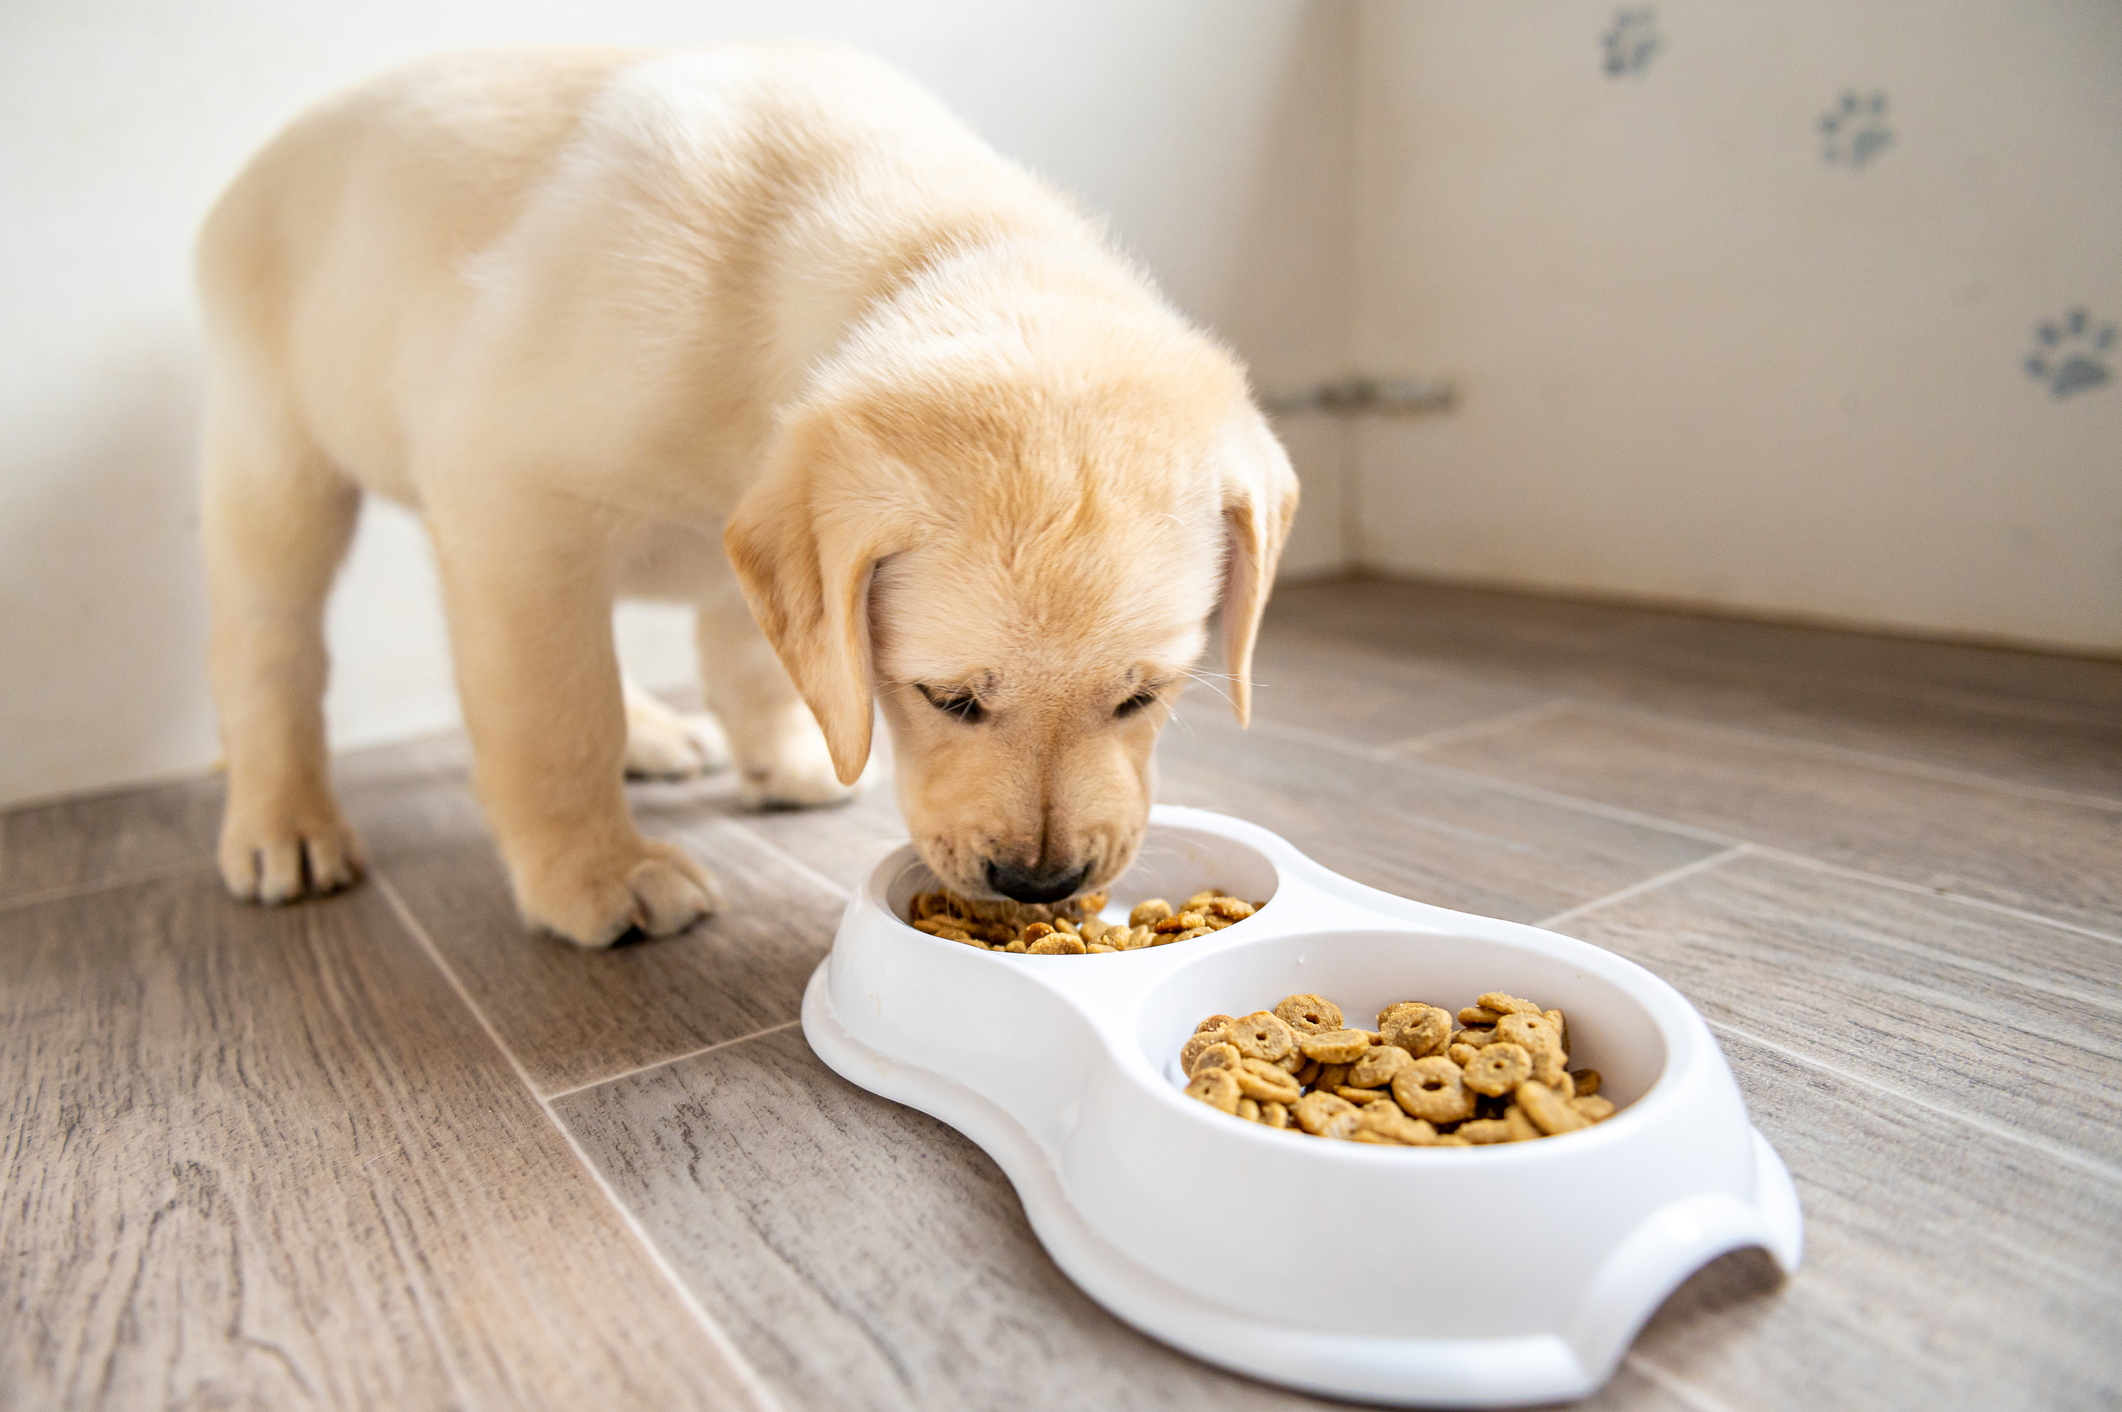 El alimento balanceado contiene las vitaminas, fibras y minerales que los perros necesitan (Getty Images)